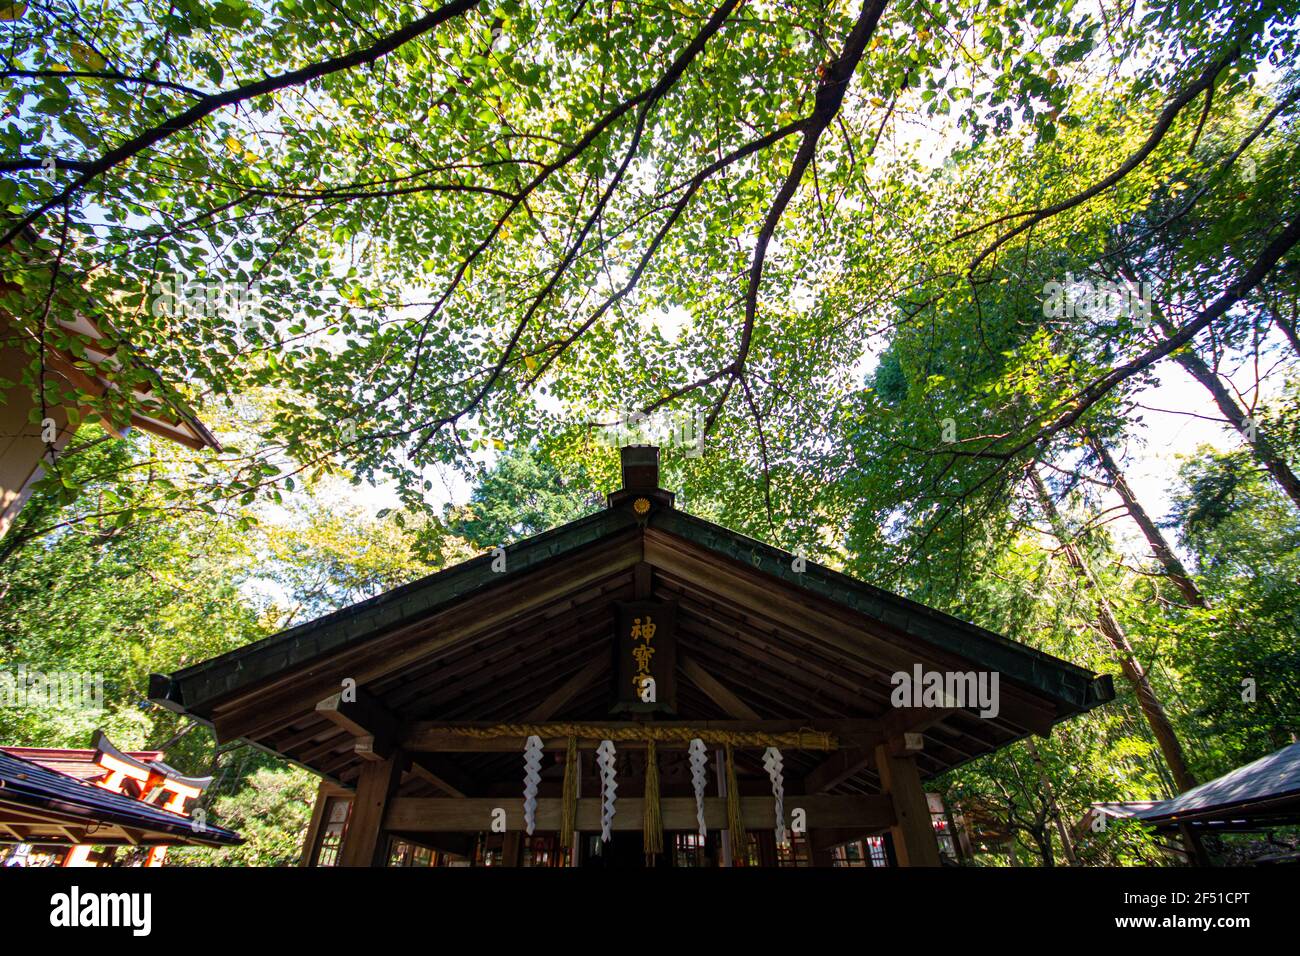 A temple at Fushimi Inari Taisha Shrine Stock Photo